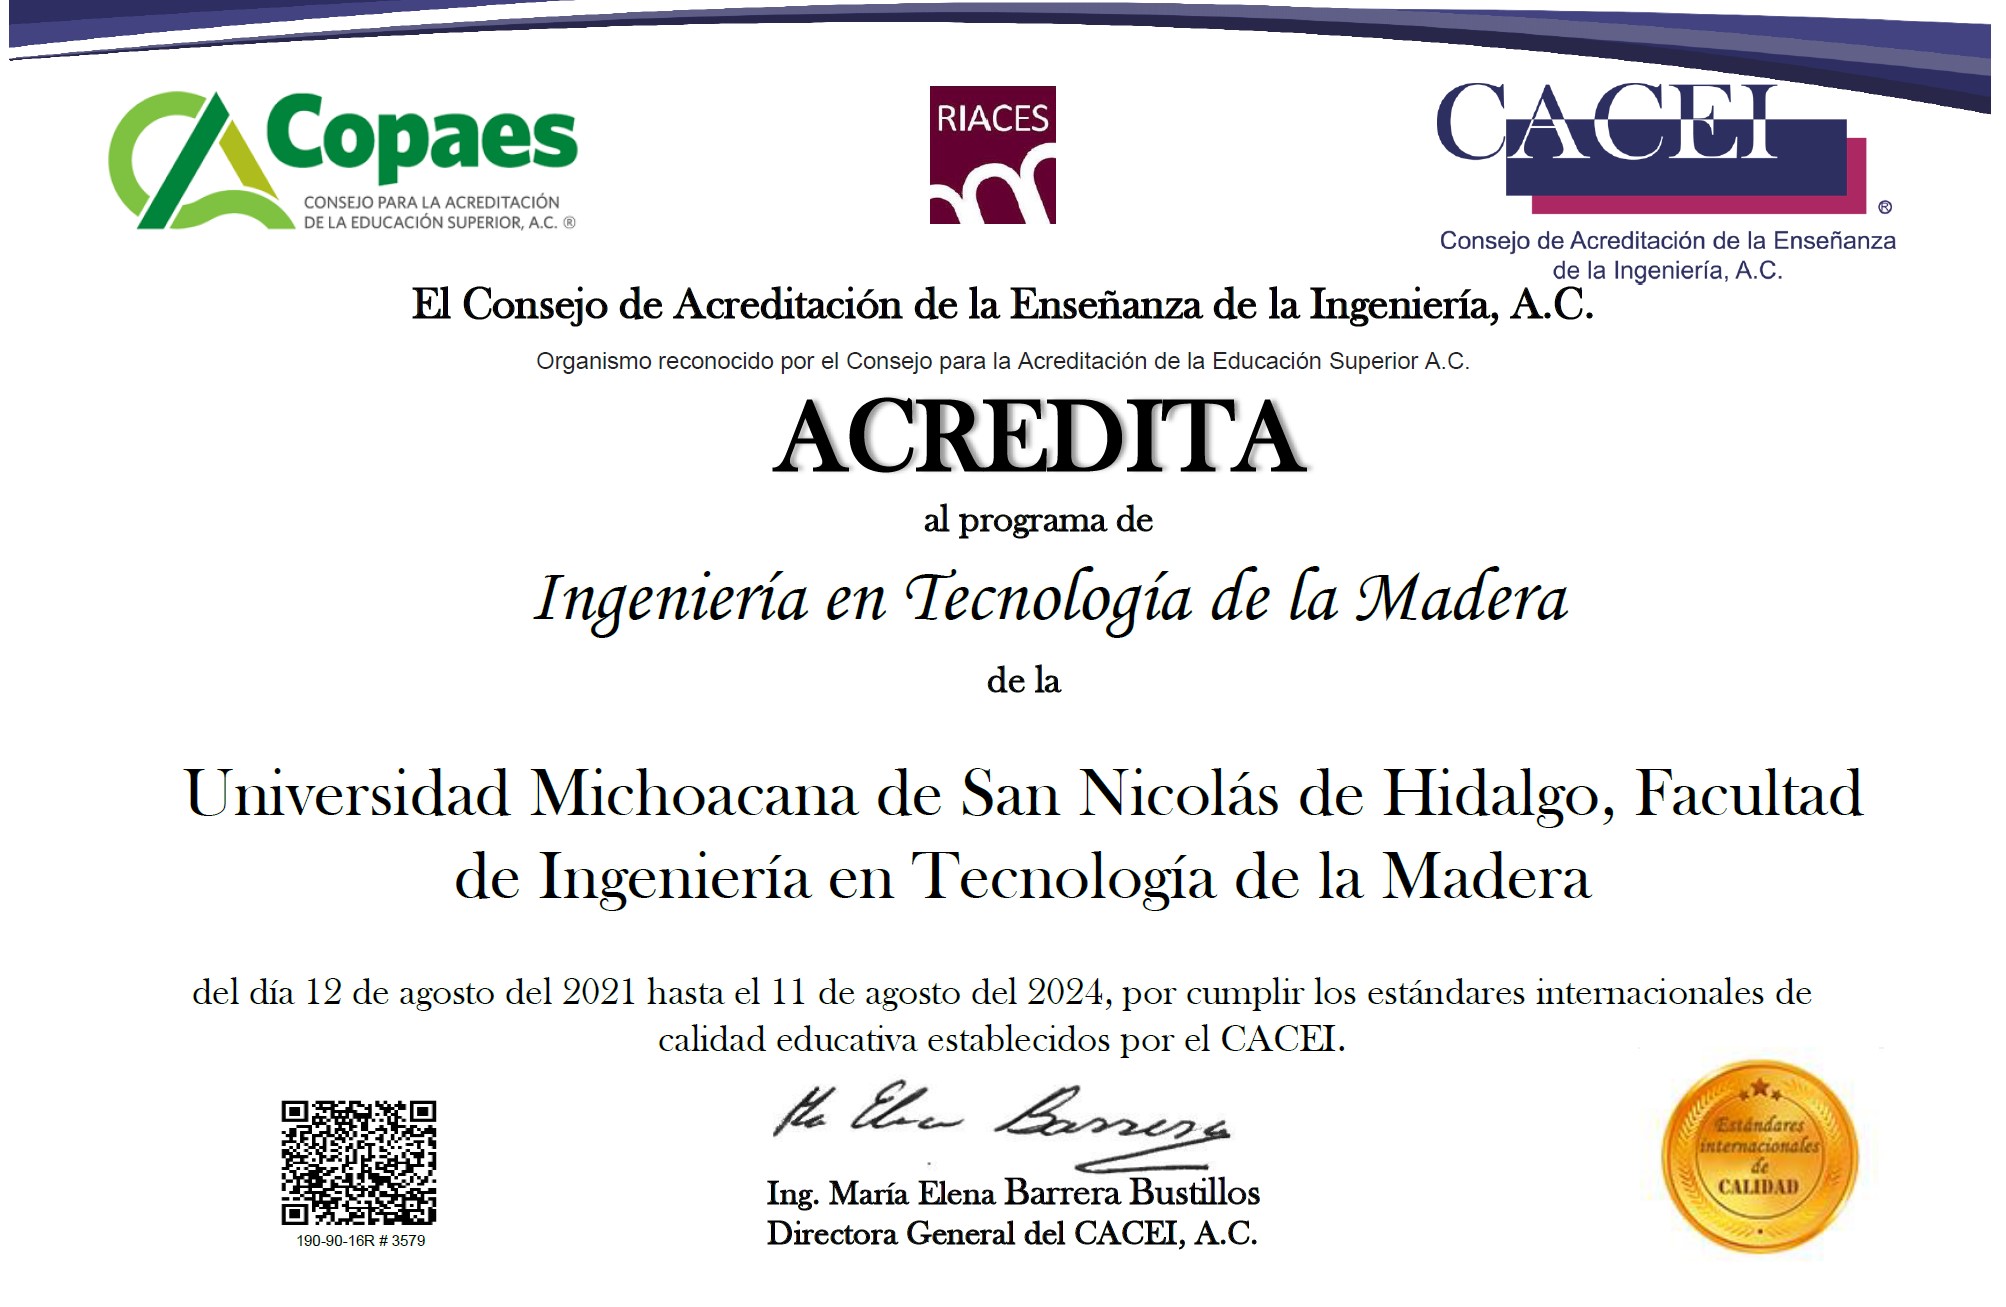 Acreditación al programa de licenciatura en Ingeniería en Tecnología de la Madera por parte de CACEI a la Facultad de Ingeniería en Tecnología de la Madera de la UMSNH.